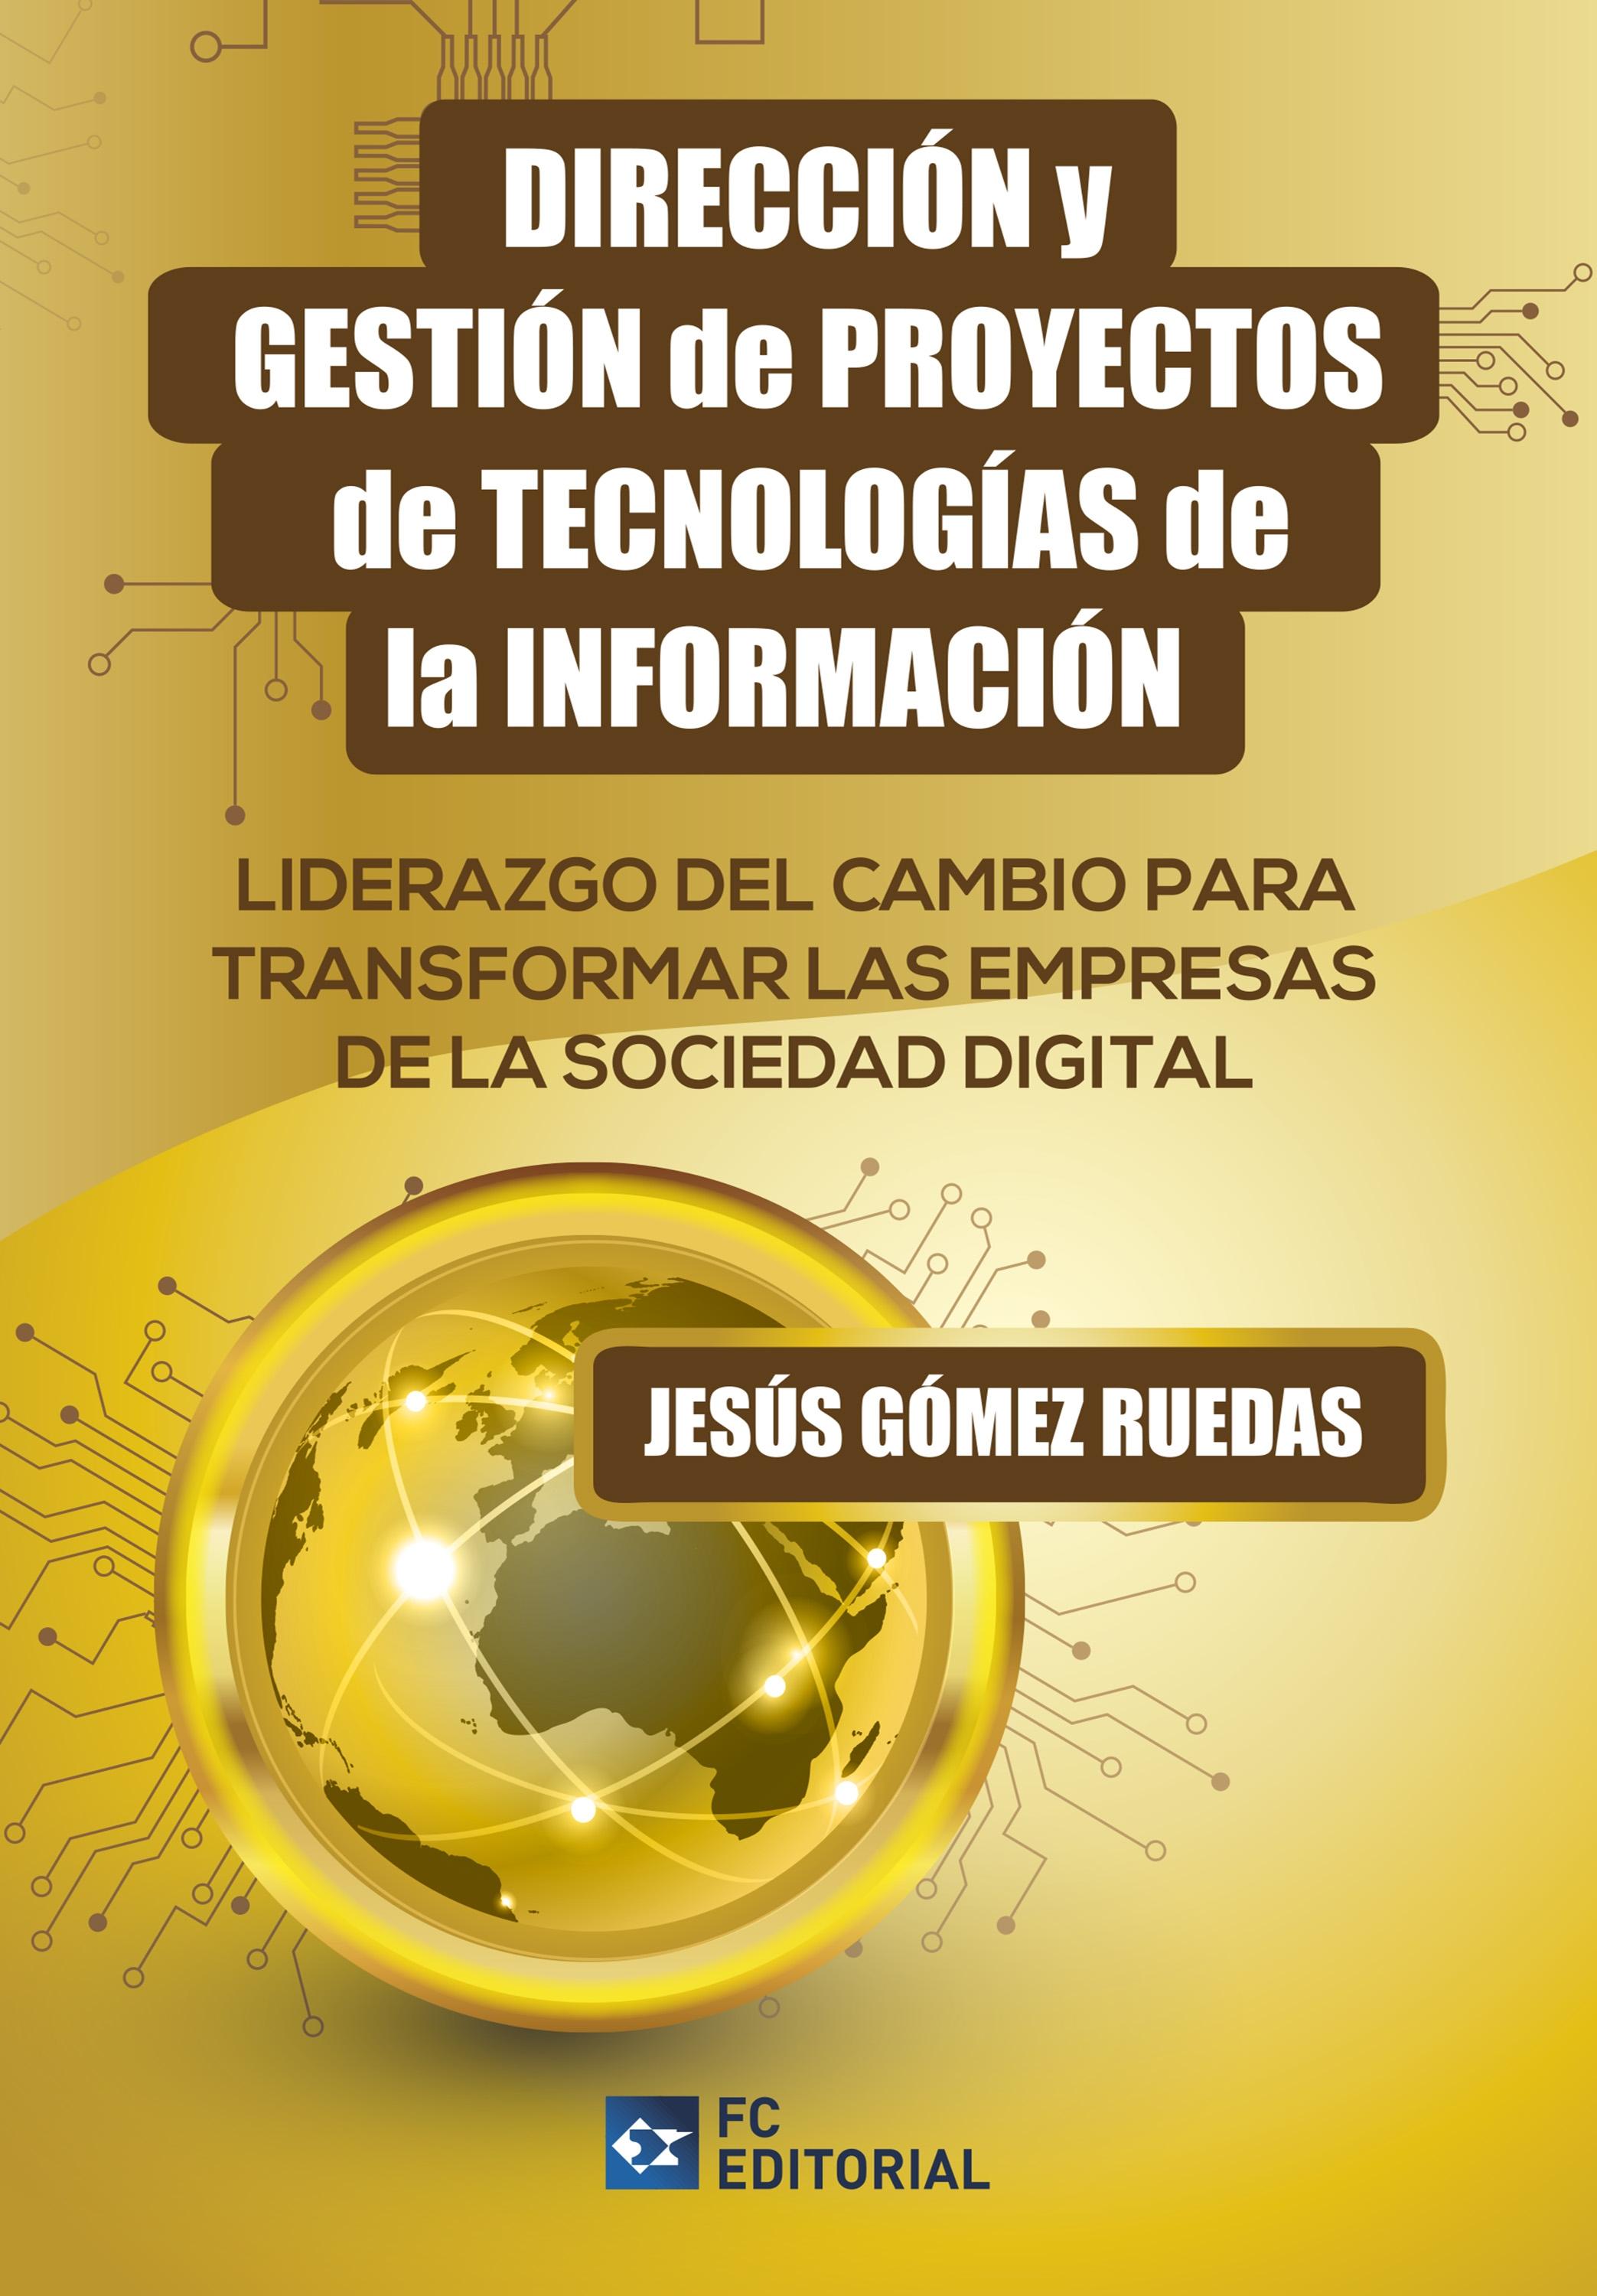 Dirección y gestión de proyectos de Tecnologías de la Información "Liderazgo del cambio para transformar las Empresas de la Sociedad Digital"